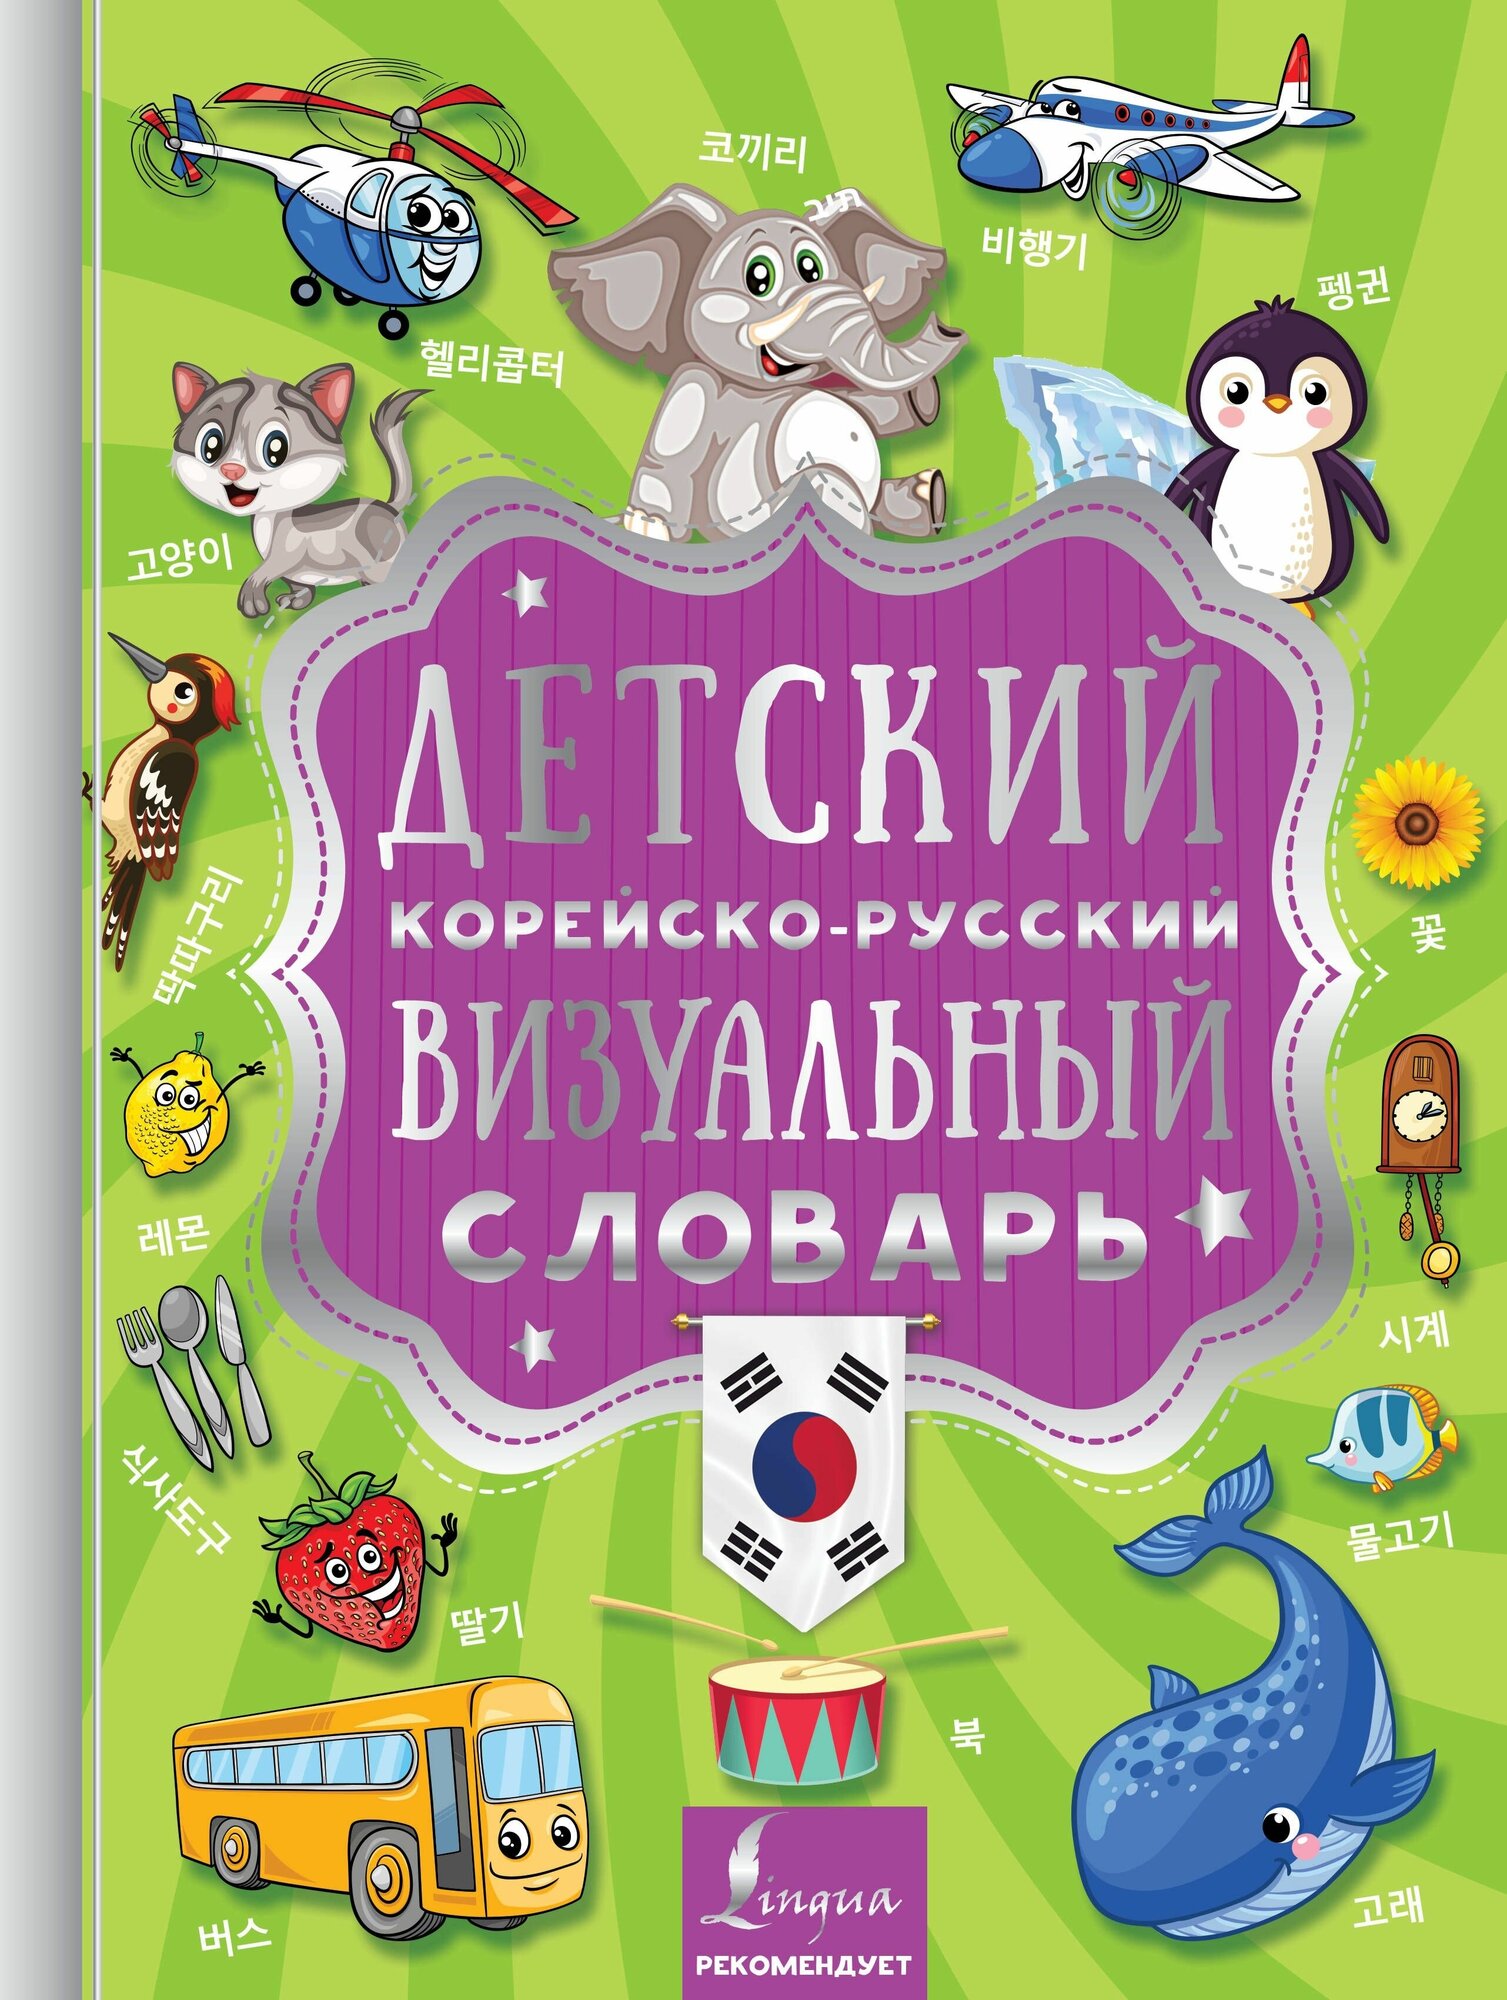 Детский корейско-русский визуальный словарь - фото №6